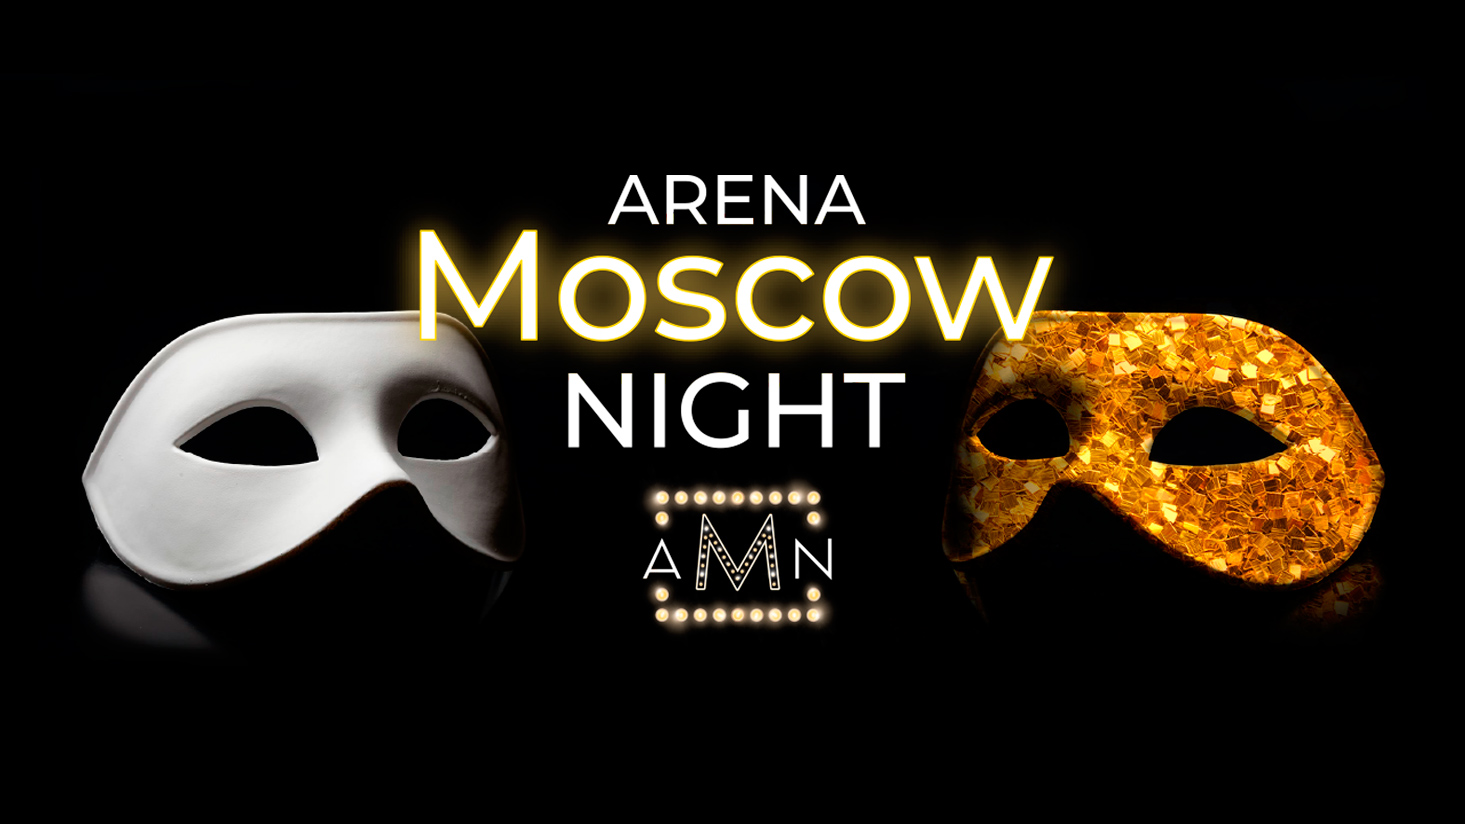 Дарья Повереннова оценит вокал участников седьмого концерта Arena Moscow Night